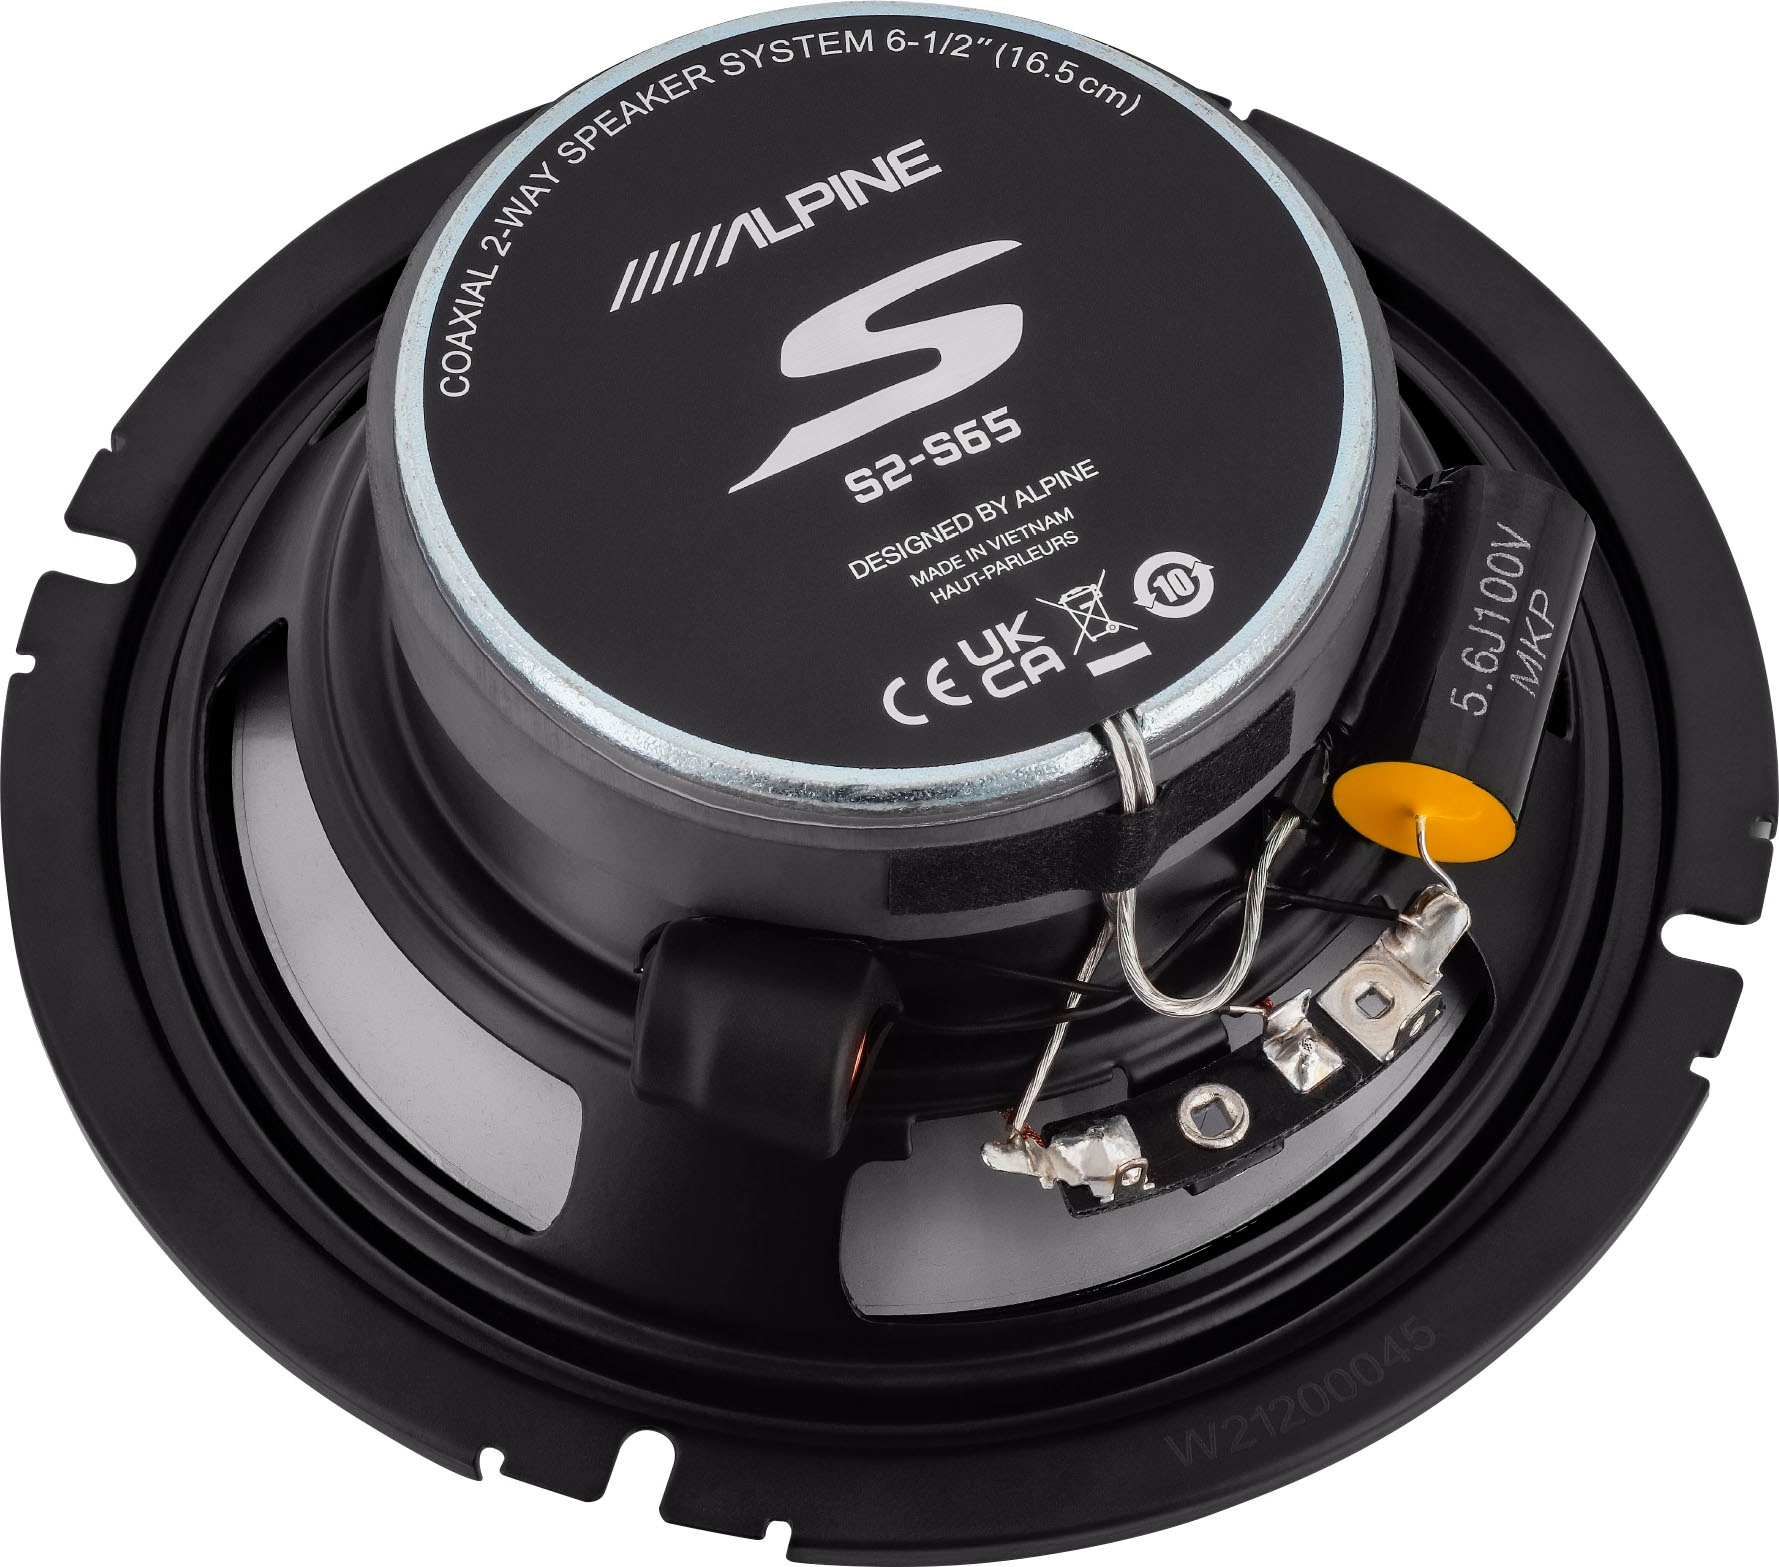 S-Series 2-Way Hi-Resolution Car Speakers Glass Fiber Reinforced Cone (Pair) Black S2-S65 - Best Buy